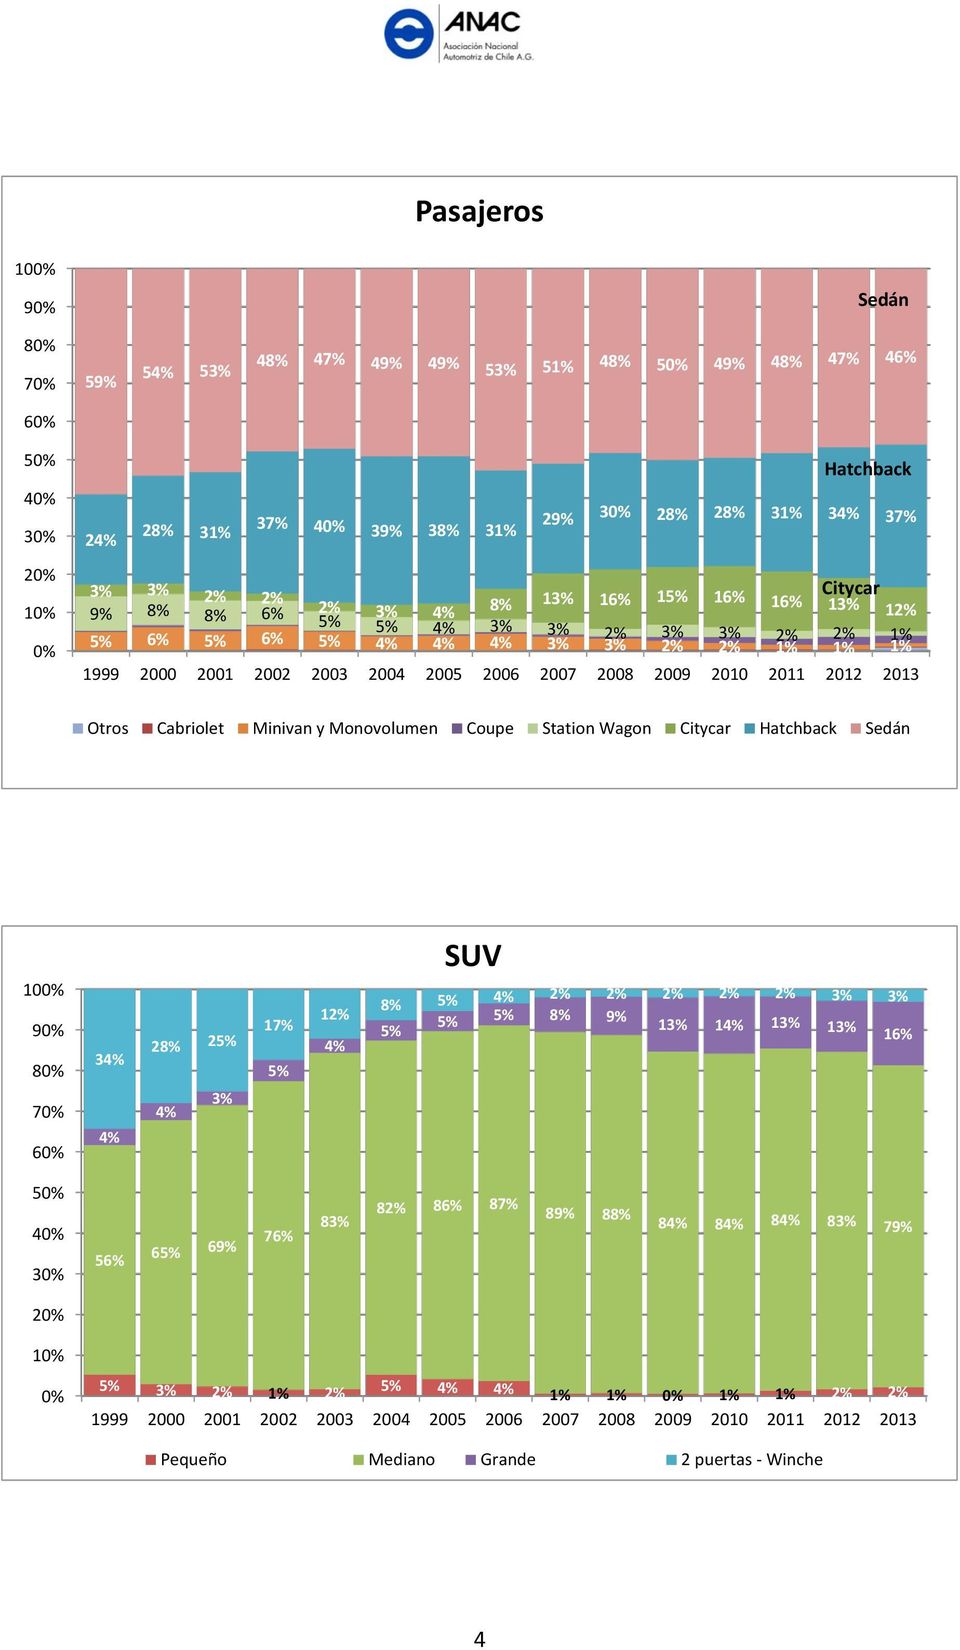 2010 2011 2012 2013 Otros Cabriolet Minivan y Monovolumen Coupe Station Wagon Citycar Hatchback Sedán 100% 90% 80% 70% 60% 34% 4% 28% 25% 4% 3% 17% 5% 12% 4% SUV 8% 5% 4% 2% 2% 2% 2% 2% 3% 3% 5% 5%